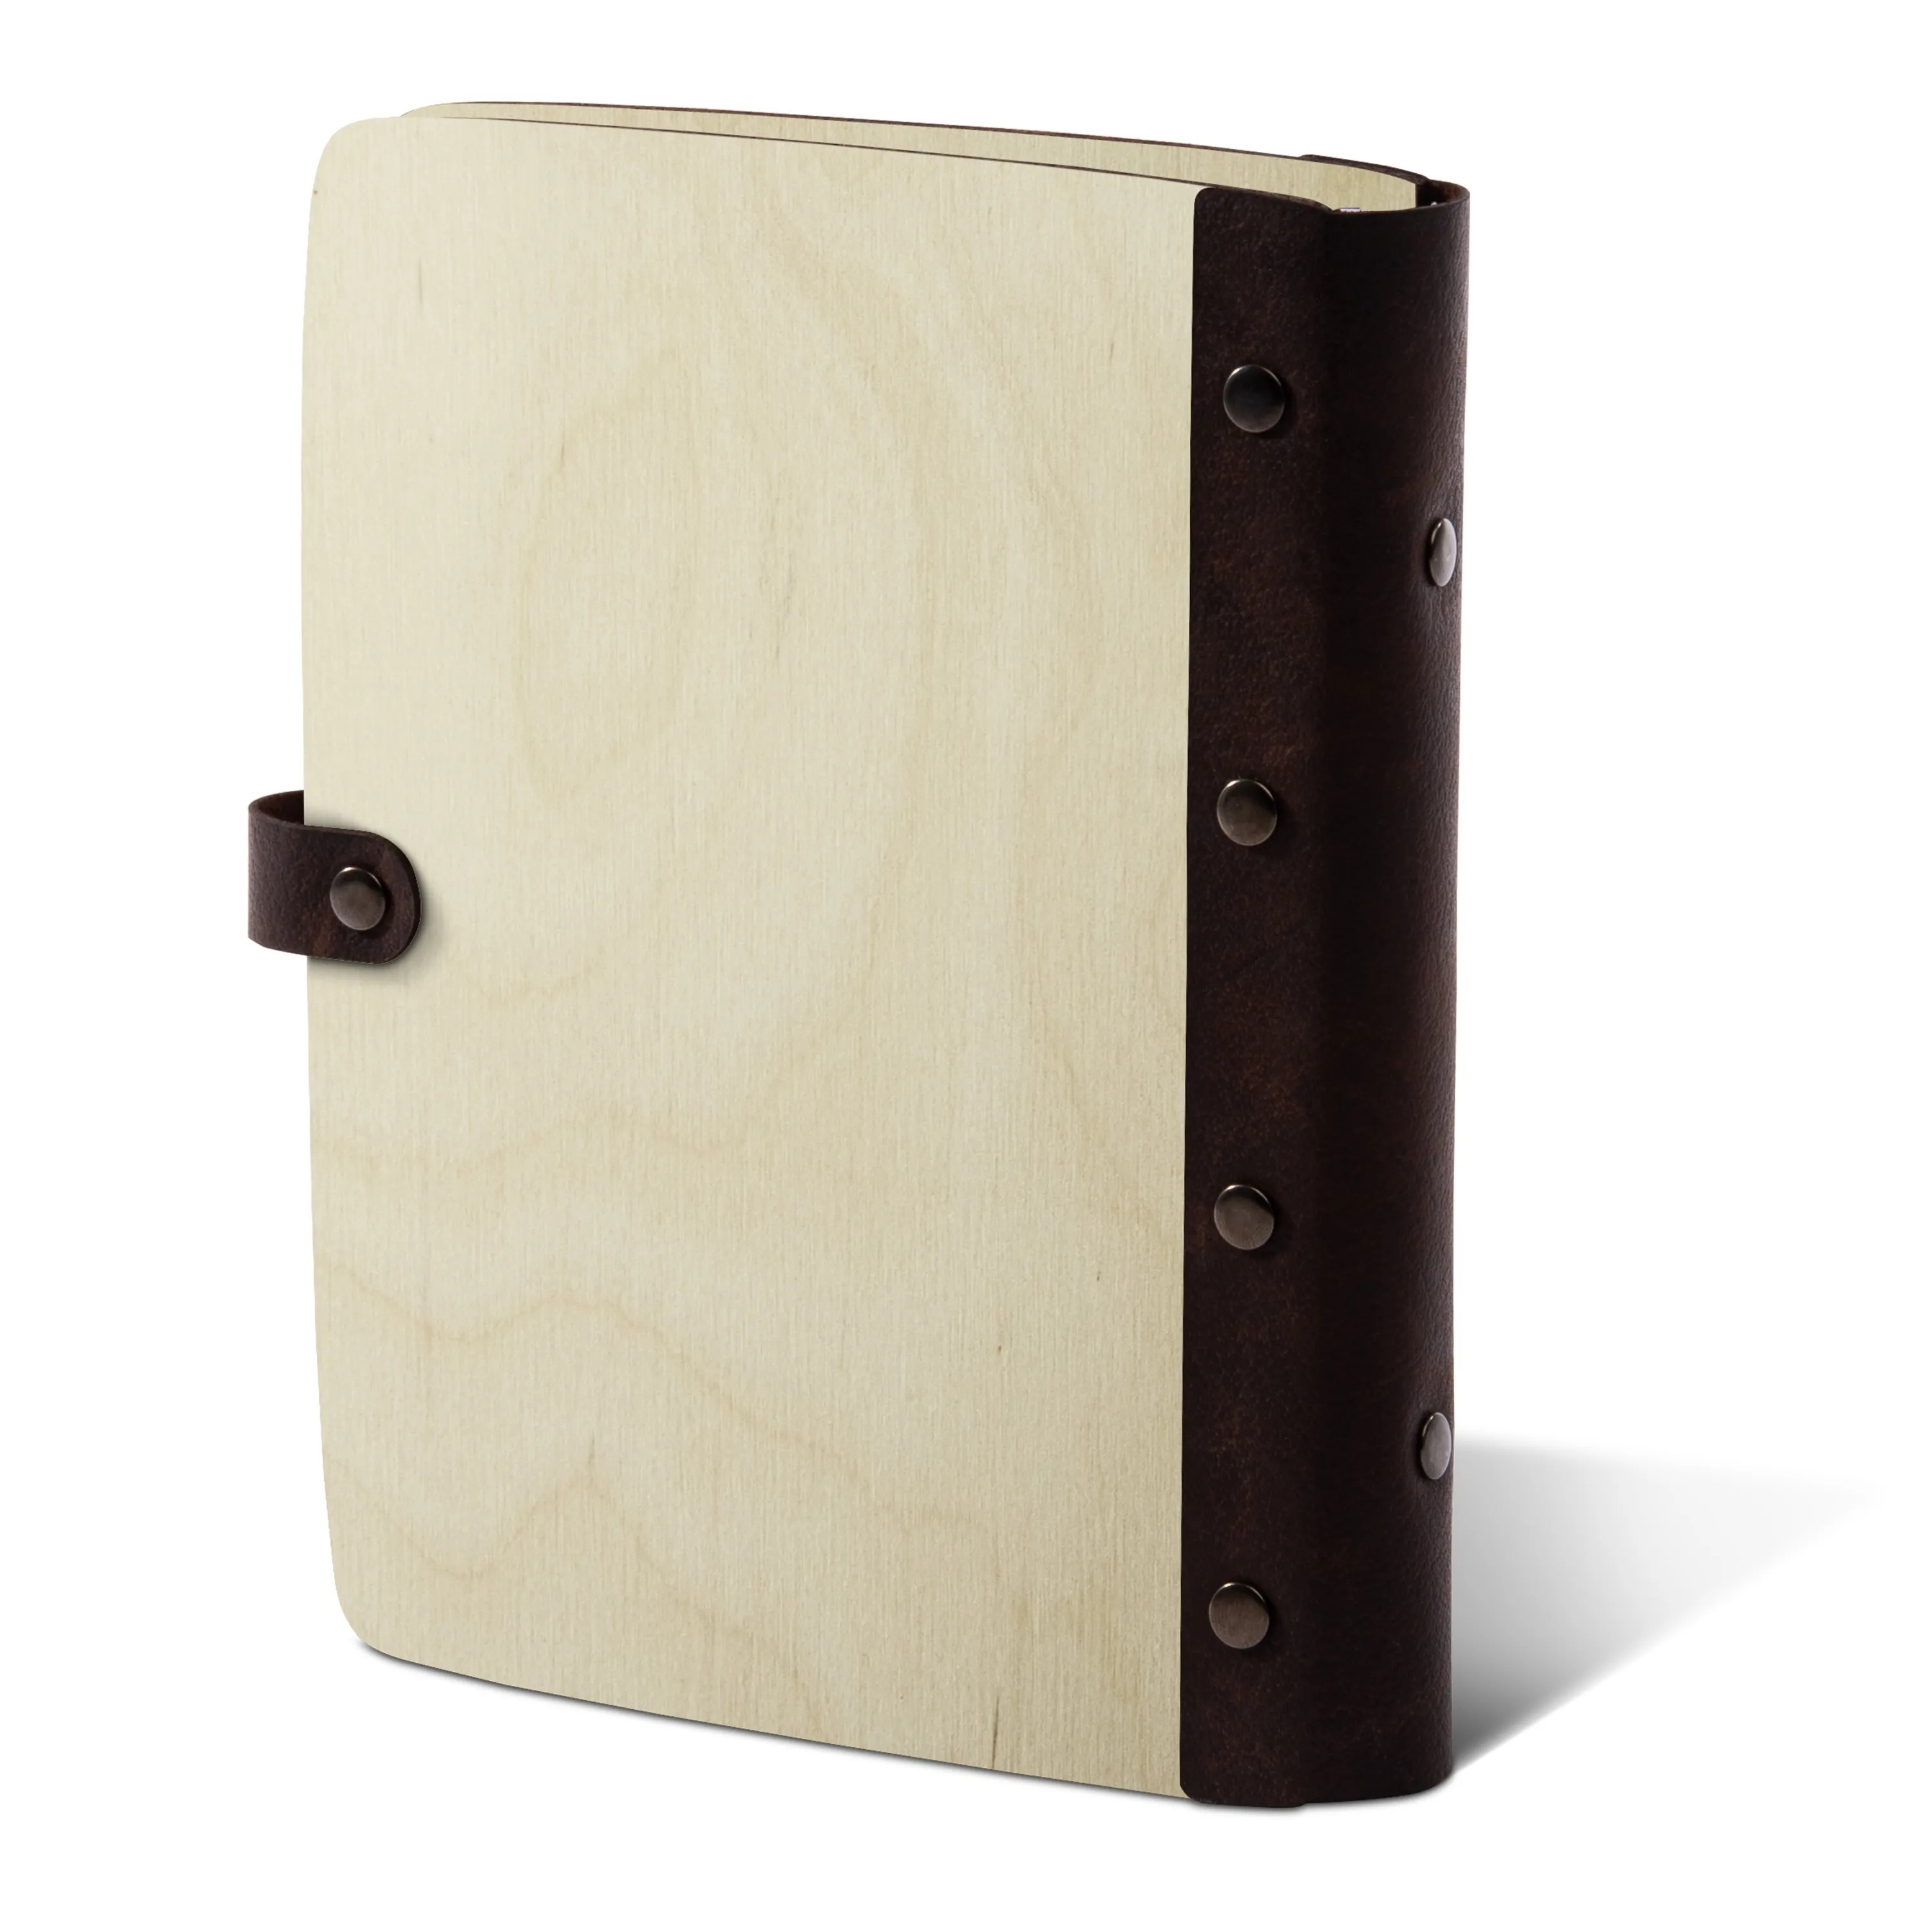 Personalisiertes Notizbuch Birkensperrholz mit Lederrücken - Wanderlust